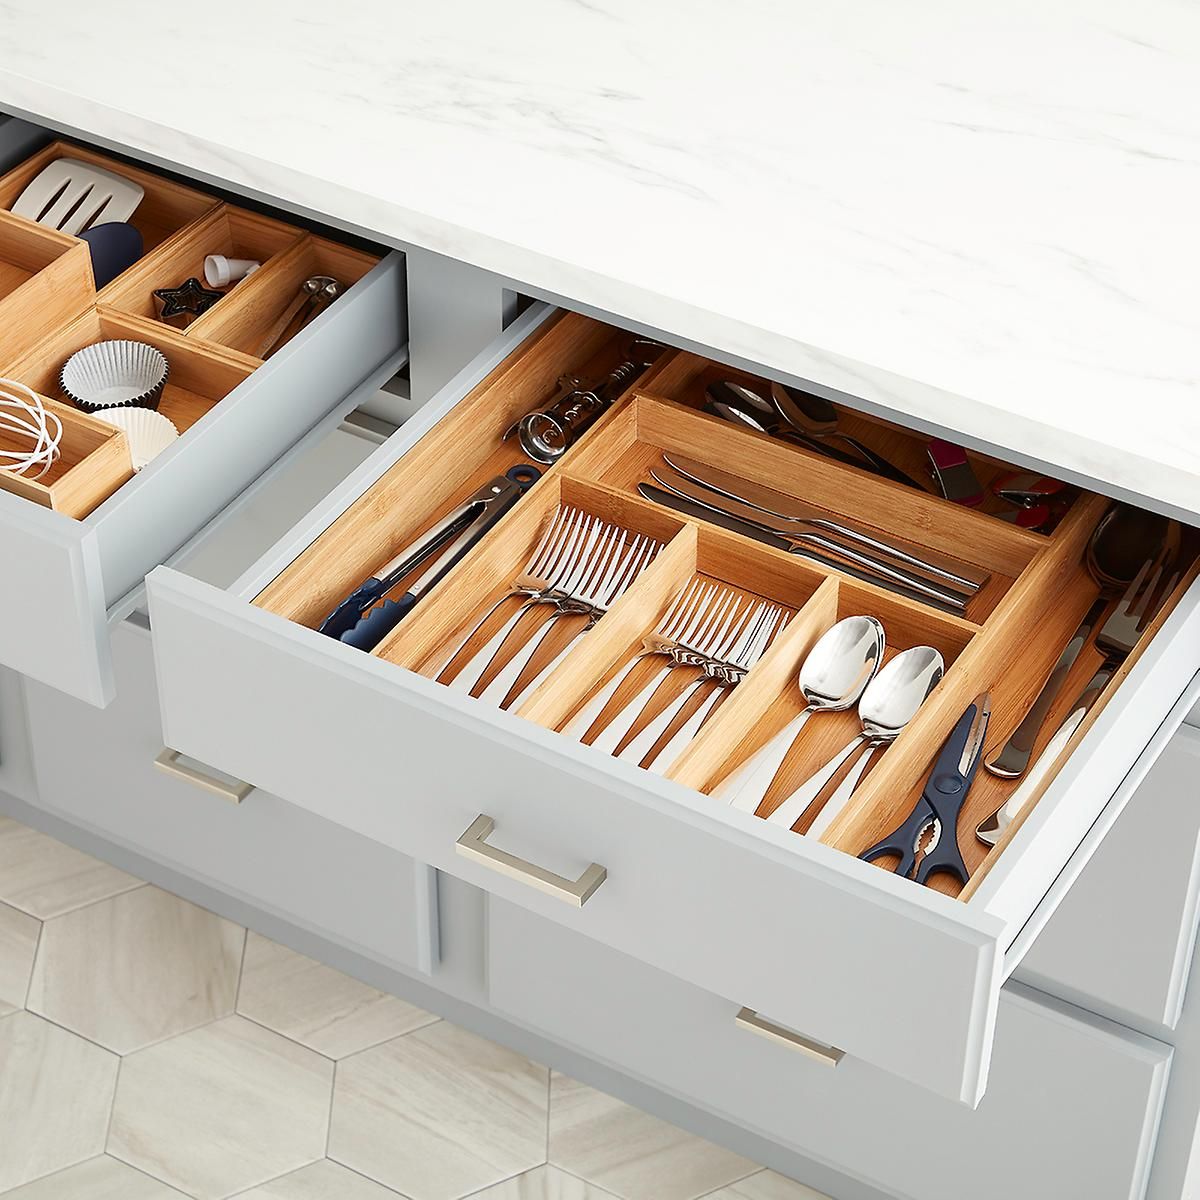 Kitchen Cutlery Trays with 4 Adjustable Smart Compartments Silverware Storage Kitchen Utensil Flatware Tray Kitchen Drawer Organizer